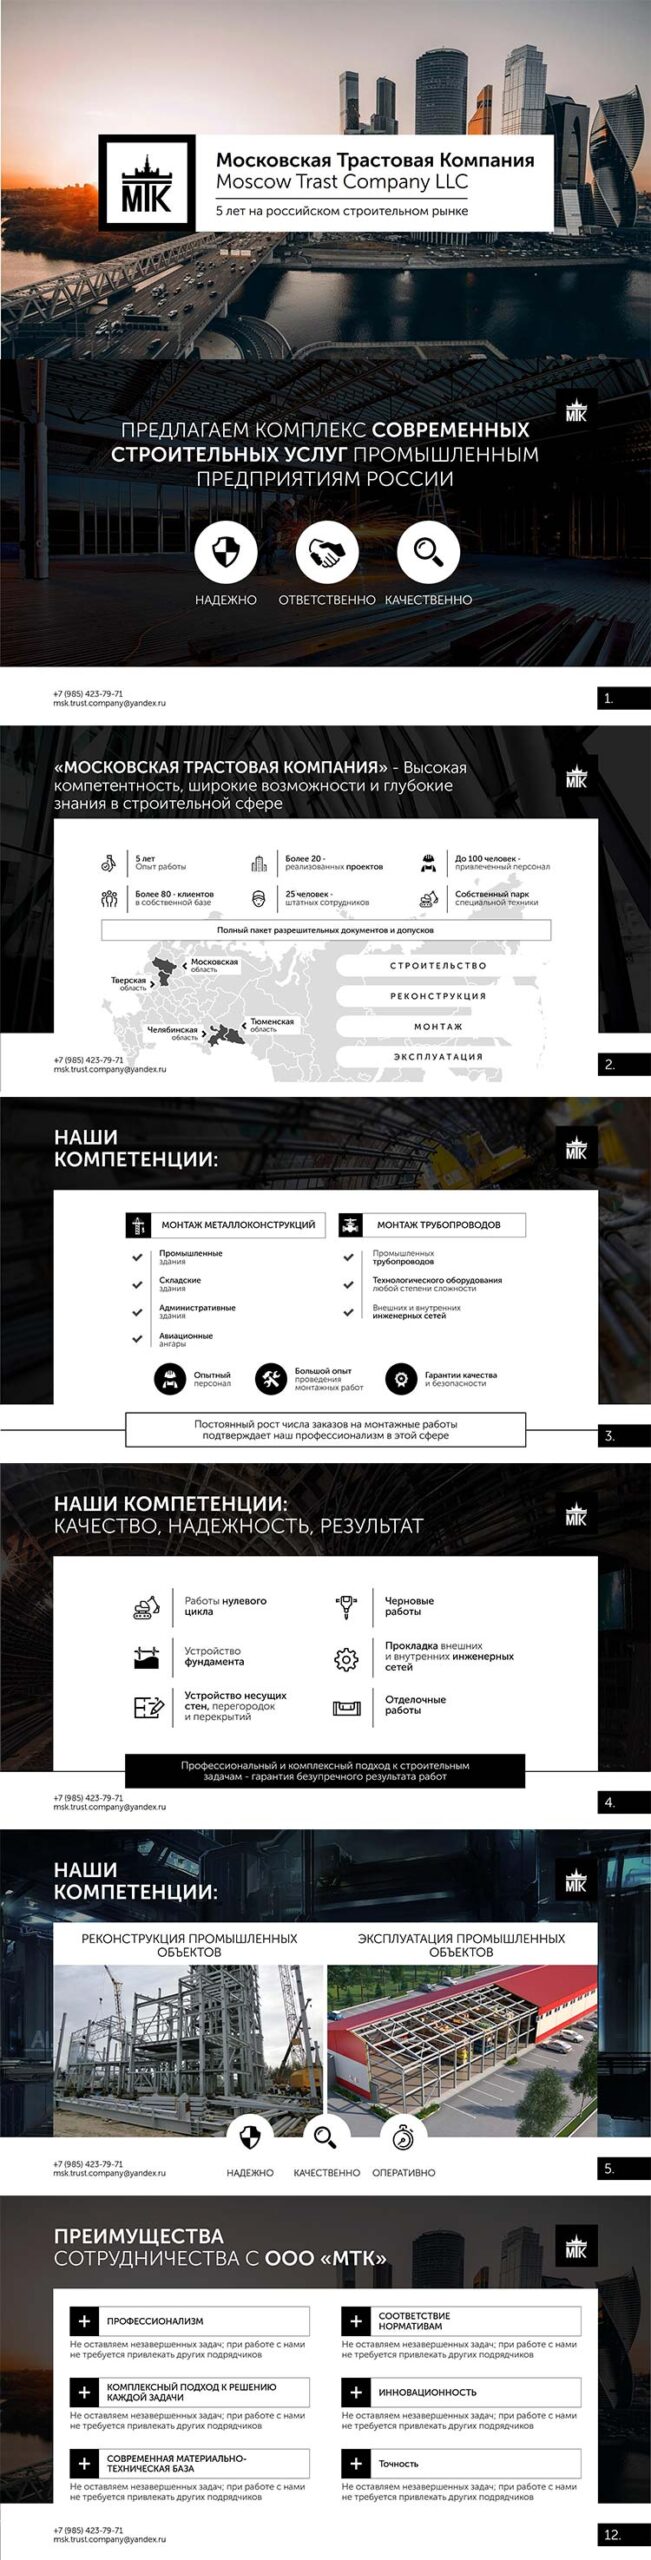 Презентация строительно-монтажной организации «Московская Трастовая Компания» для клиента